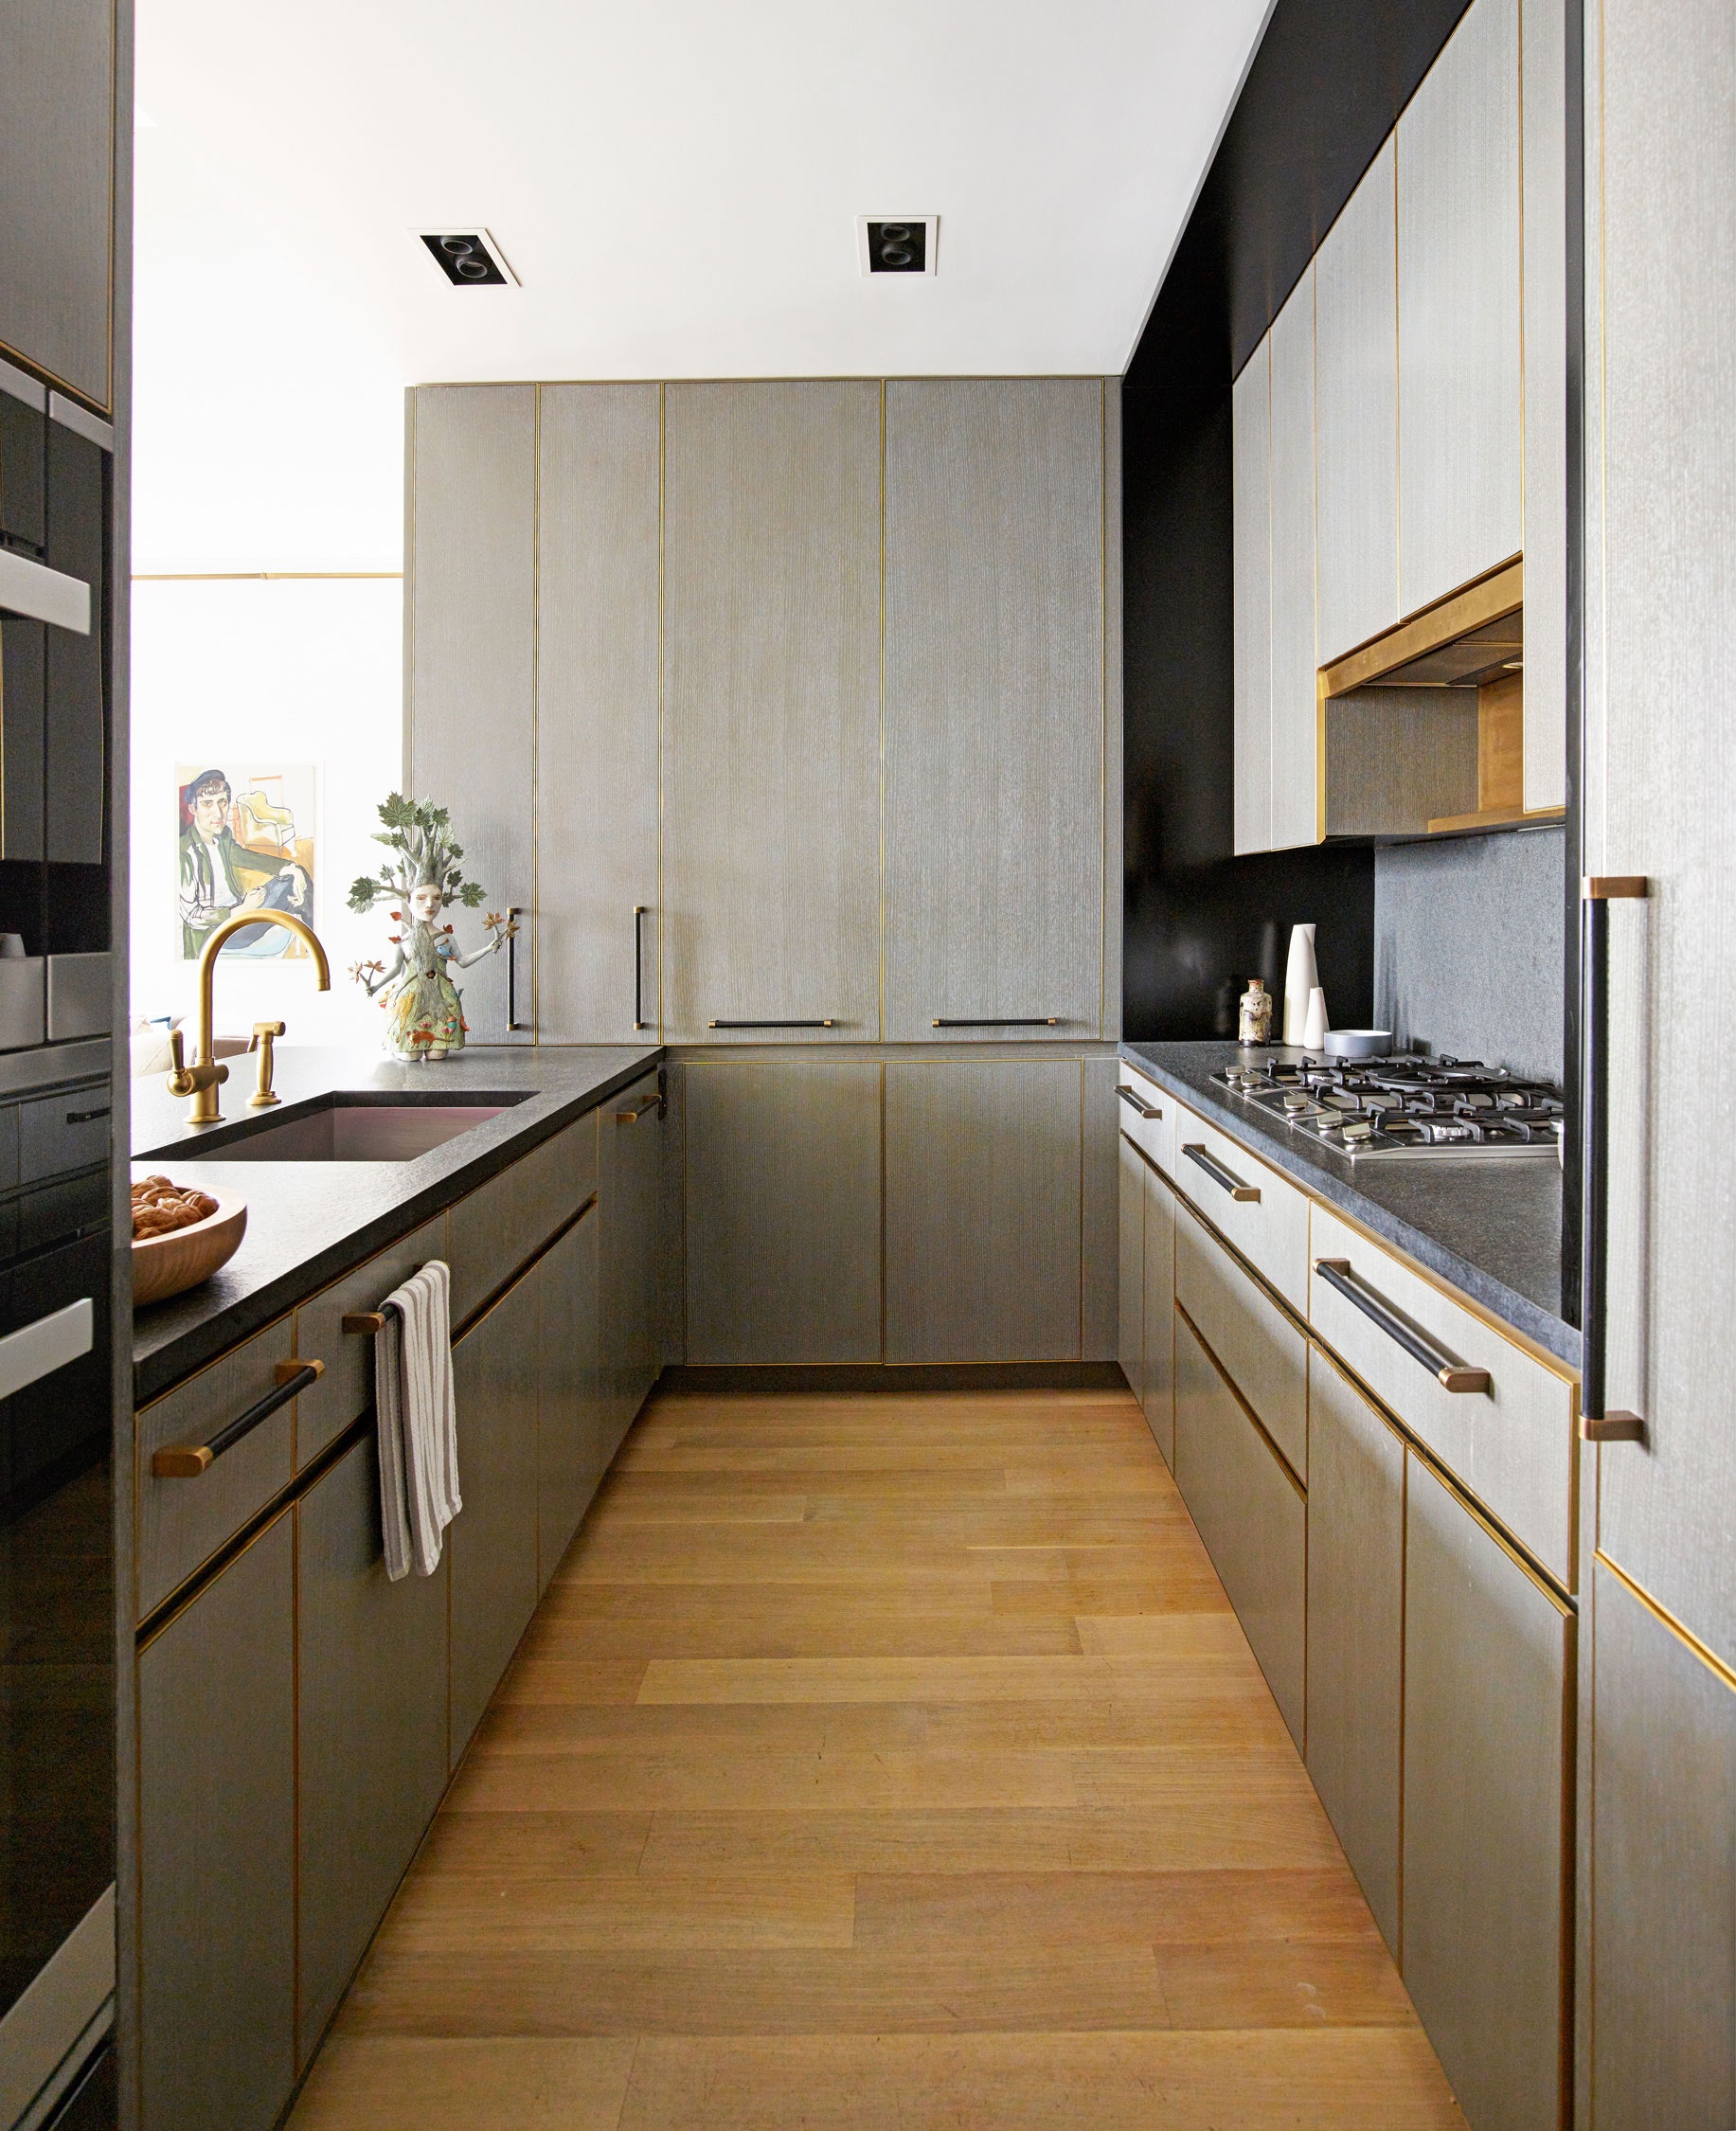 Take apartment kitchen interior design ideas as an example